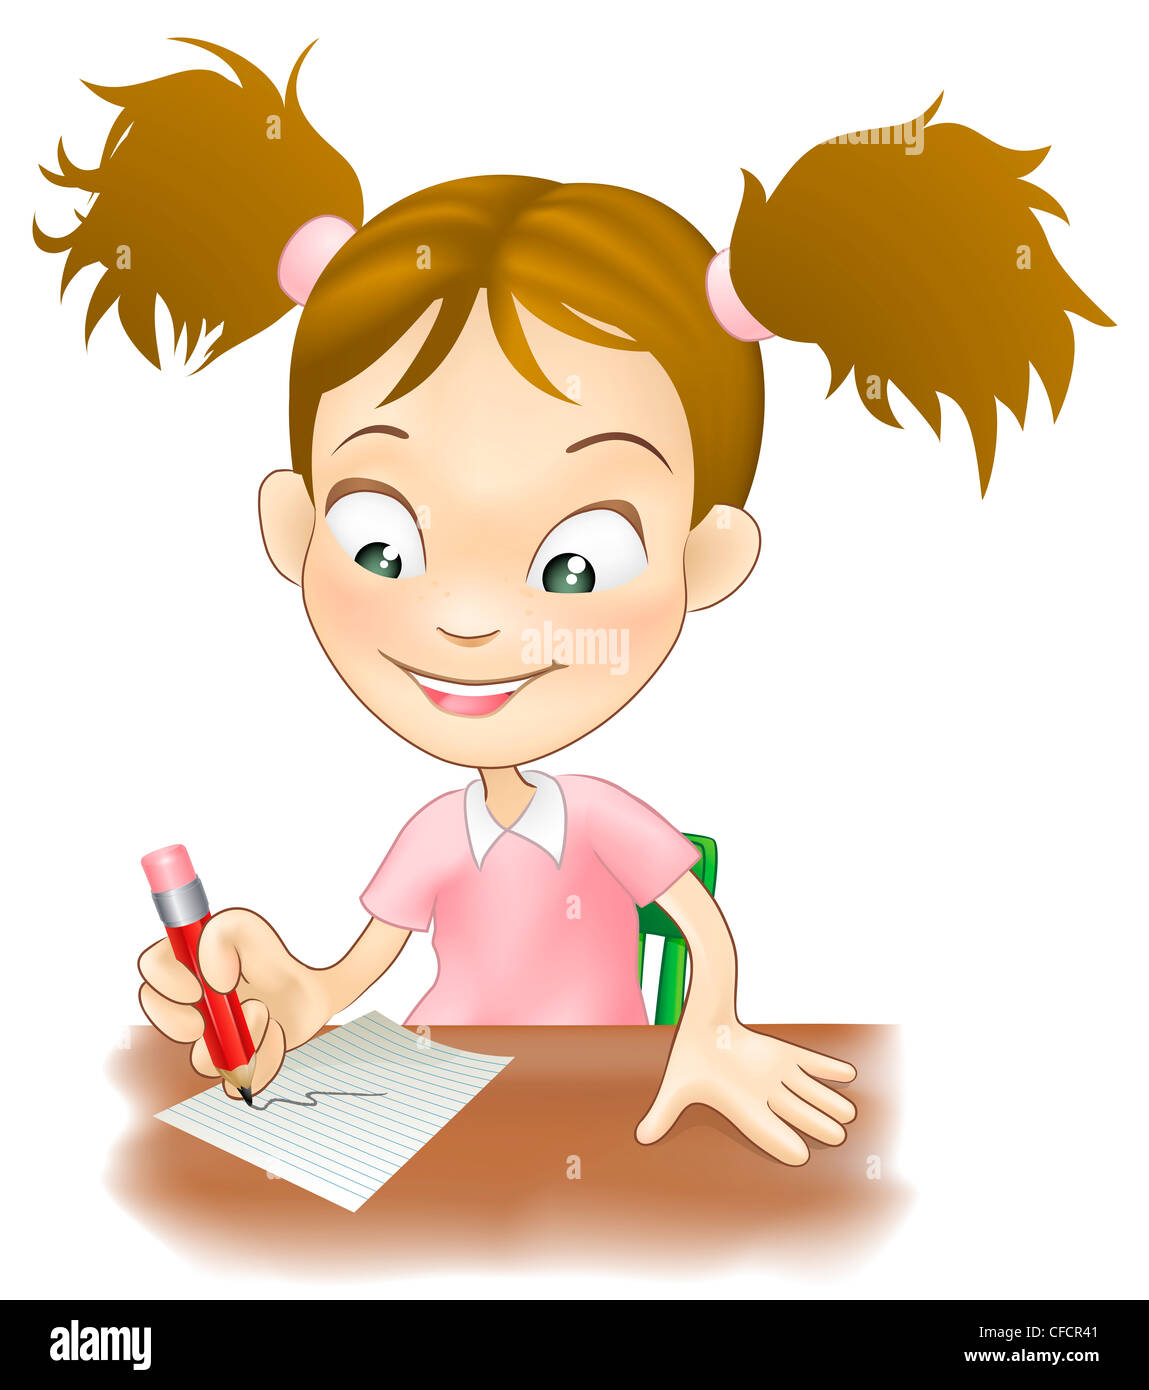 Abbildung von einem netten jungen Mädchen saß an ihrem Schreibtisch auf Papier schreiben. Stockfoto